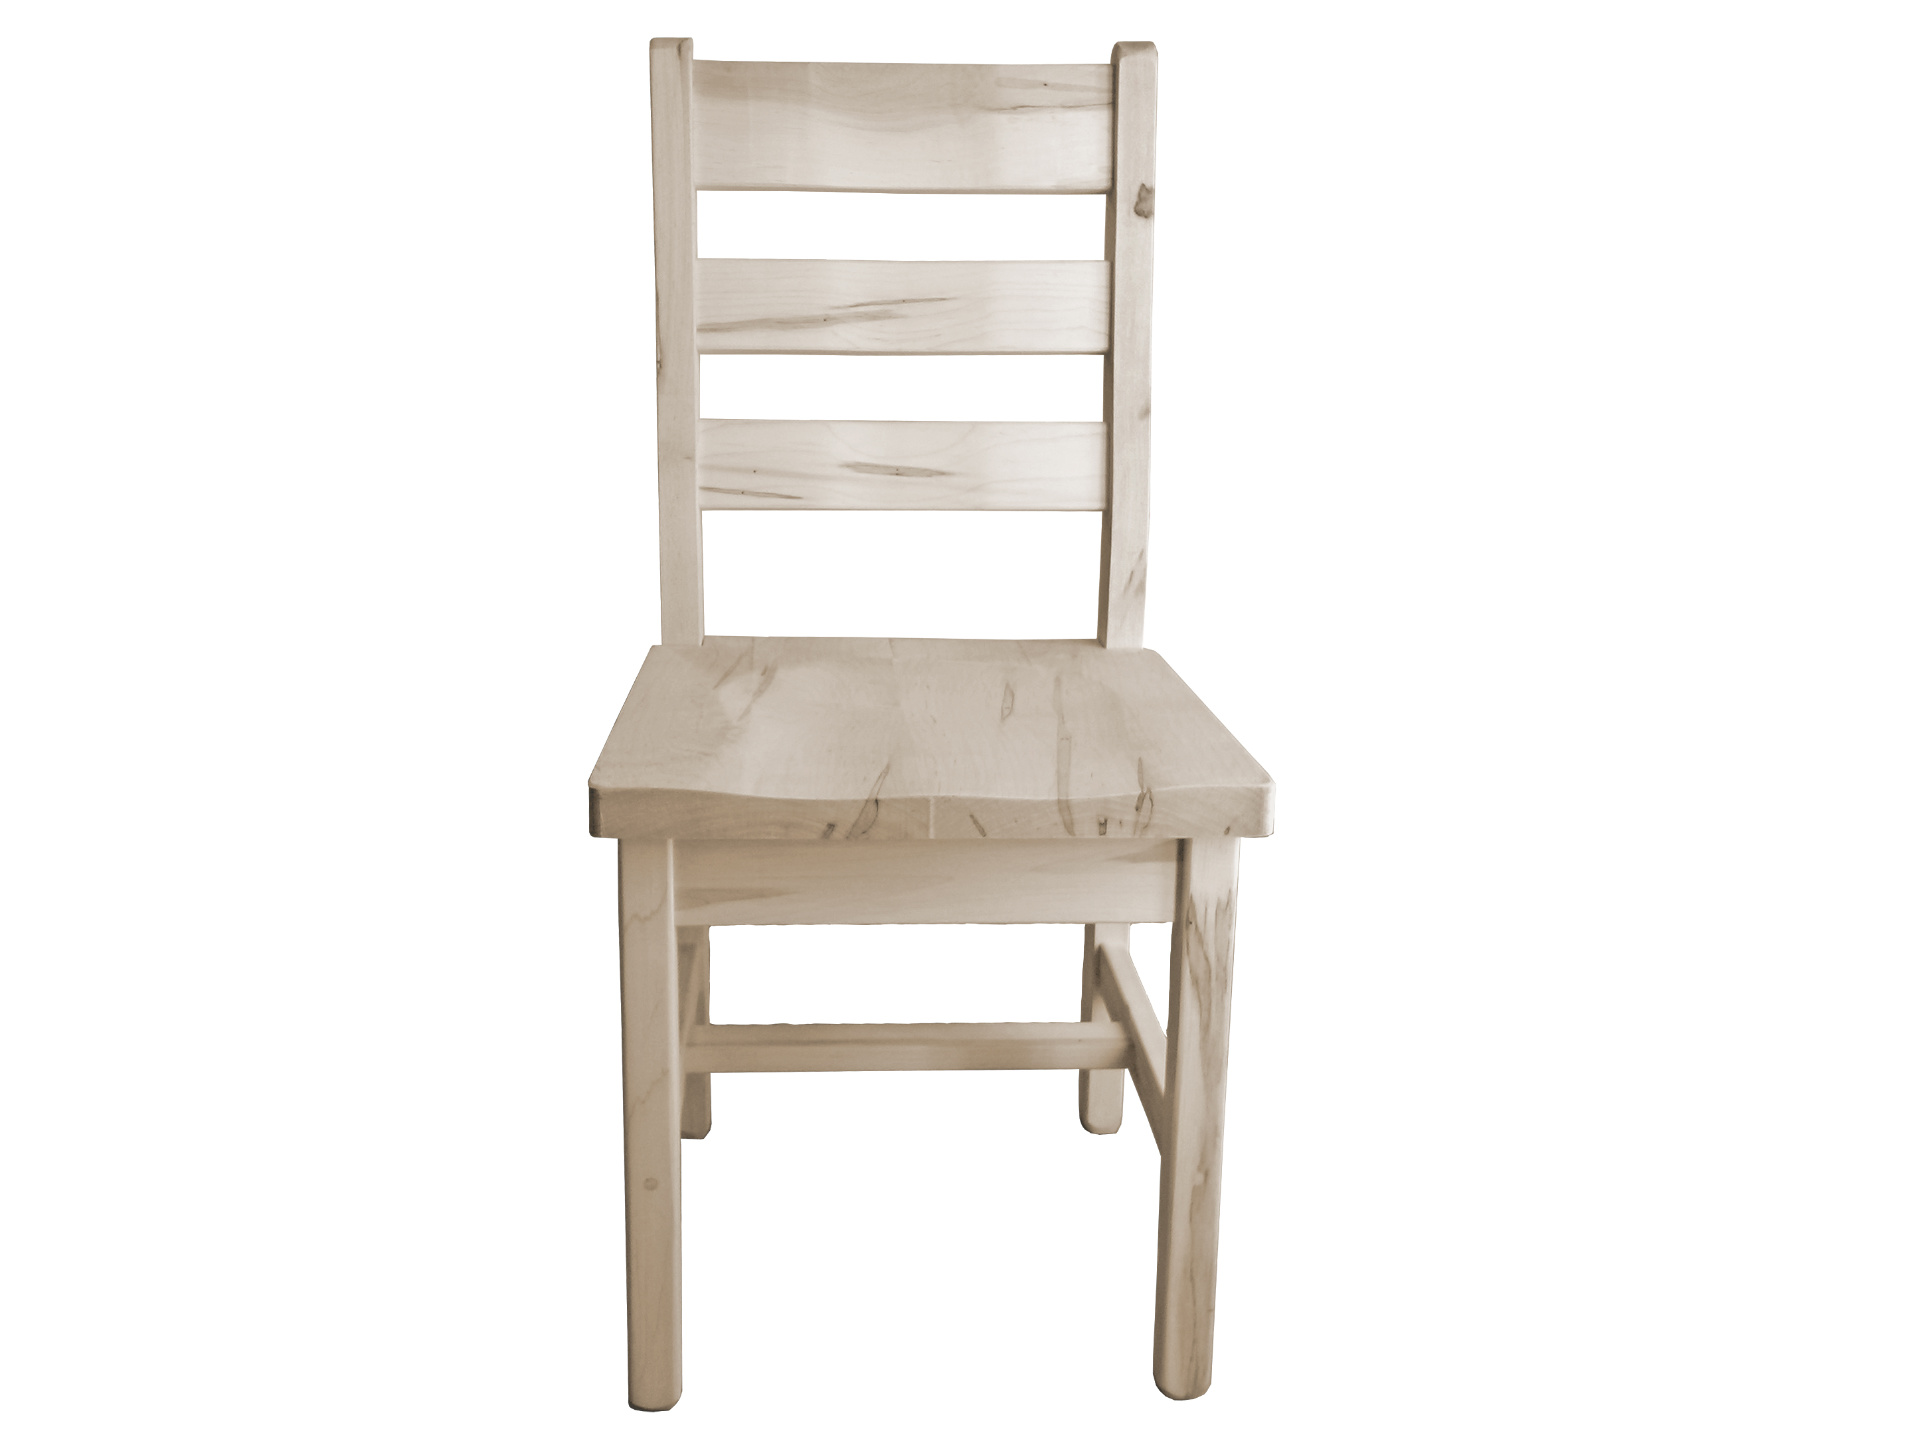 39. Quinn Ladderback Side Chair